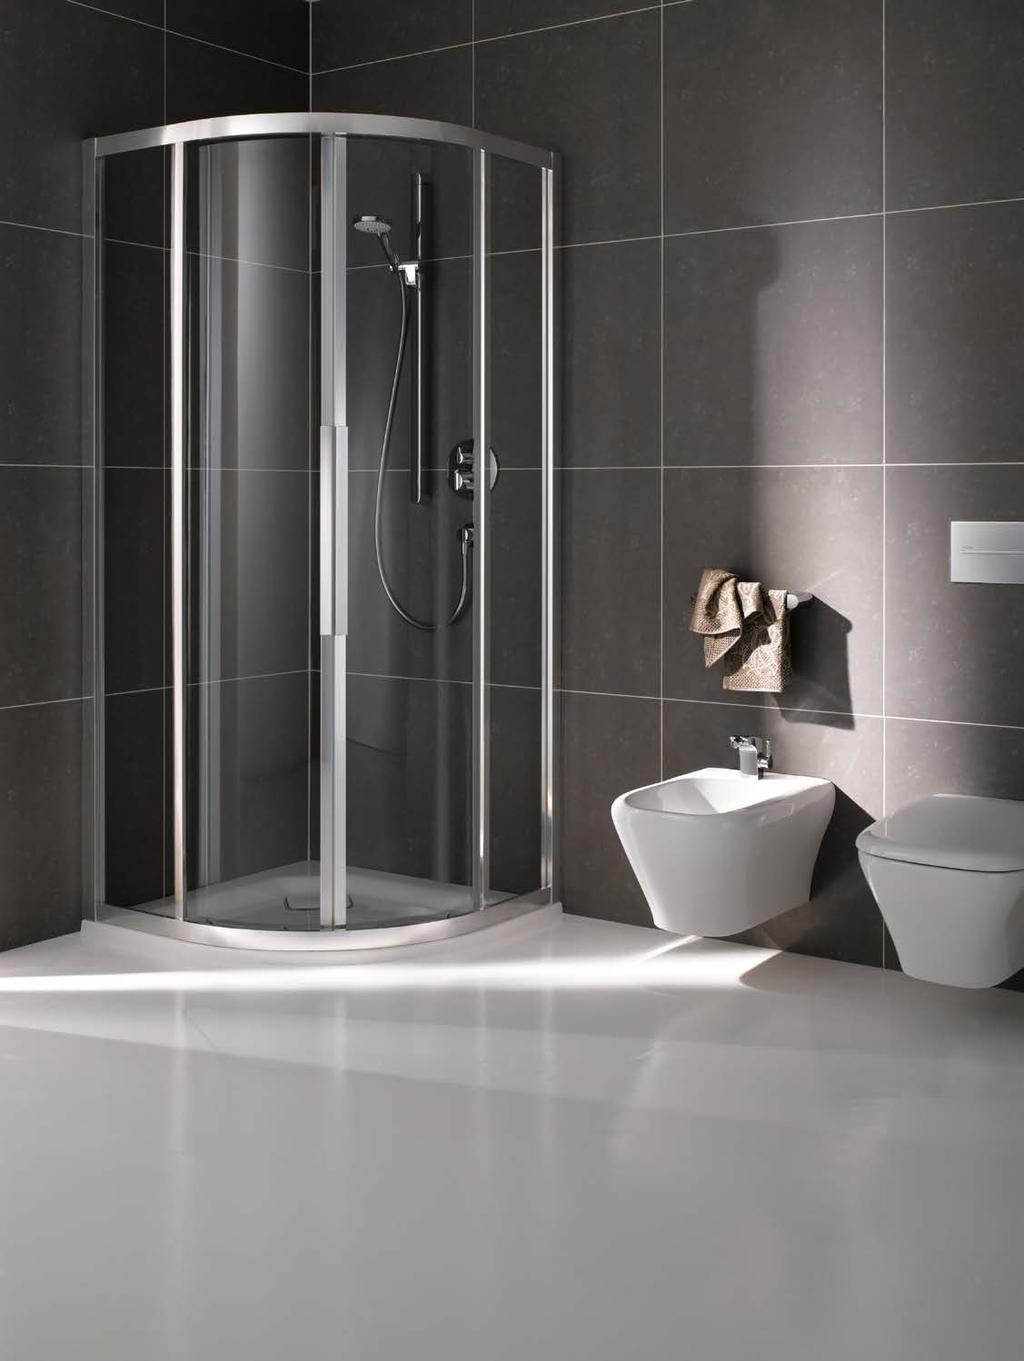 22 Viertelkreis-Dusche mit Schiebetüren Die unten abgebildeten Montagesituationen präsentieren Ihnen einen